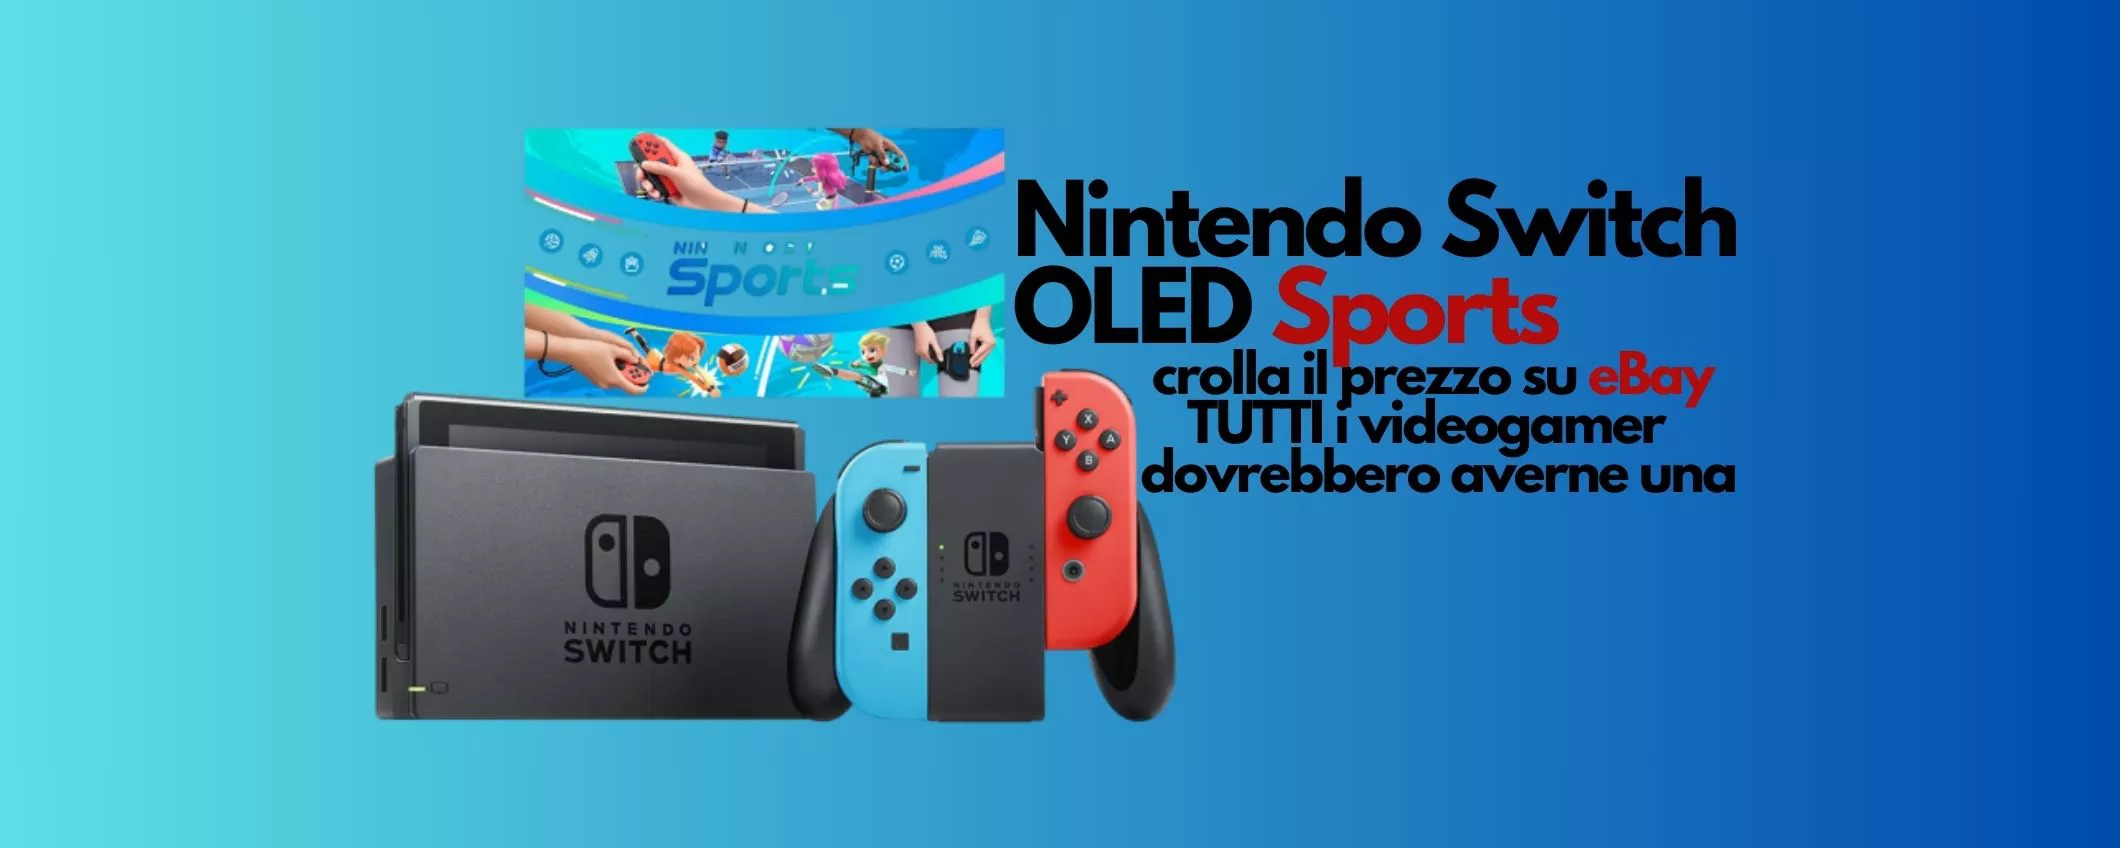 Nintendo Switch OLED Sports crolla il prezzo su eBay: FOLLE rinunciarci